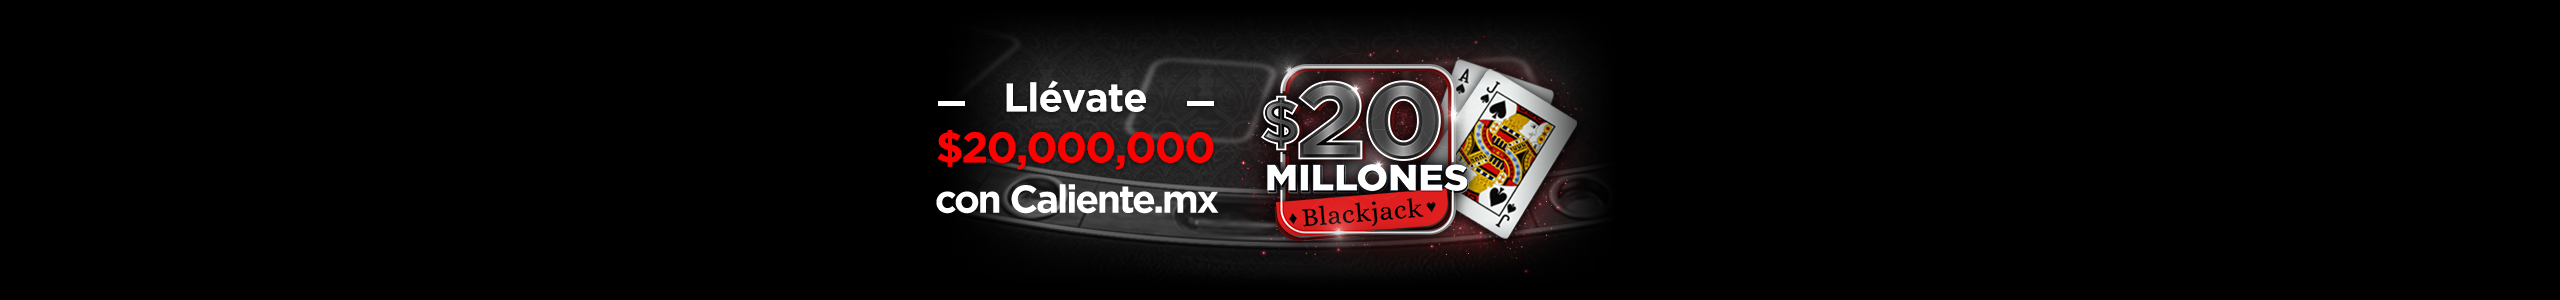 $20M Blackjack en Caliente.mx